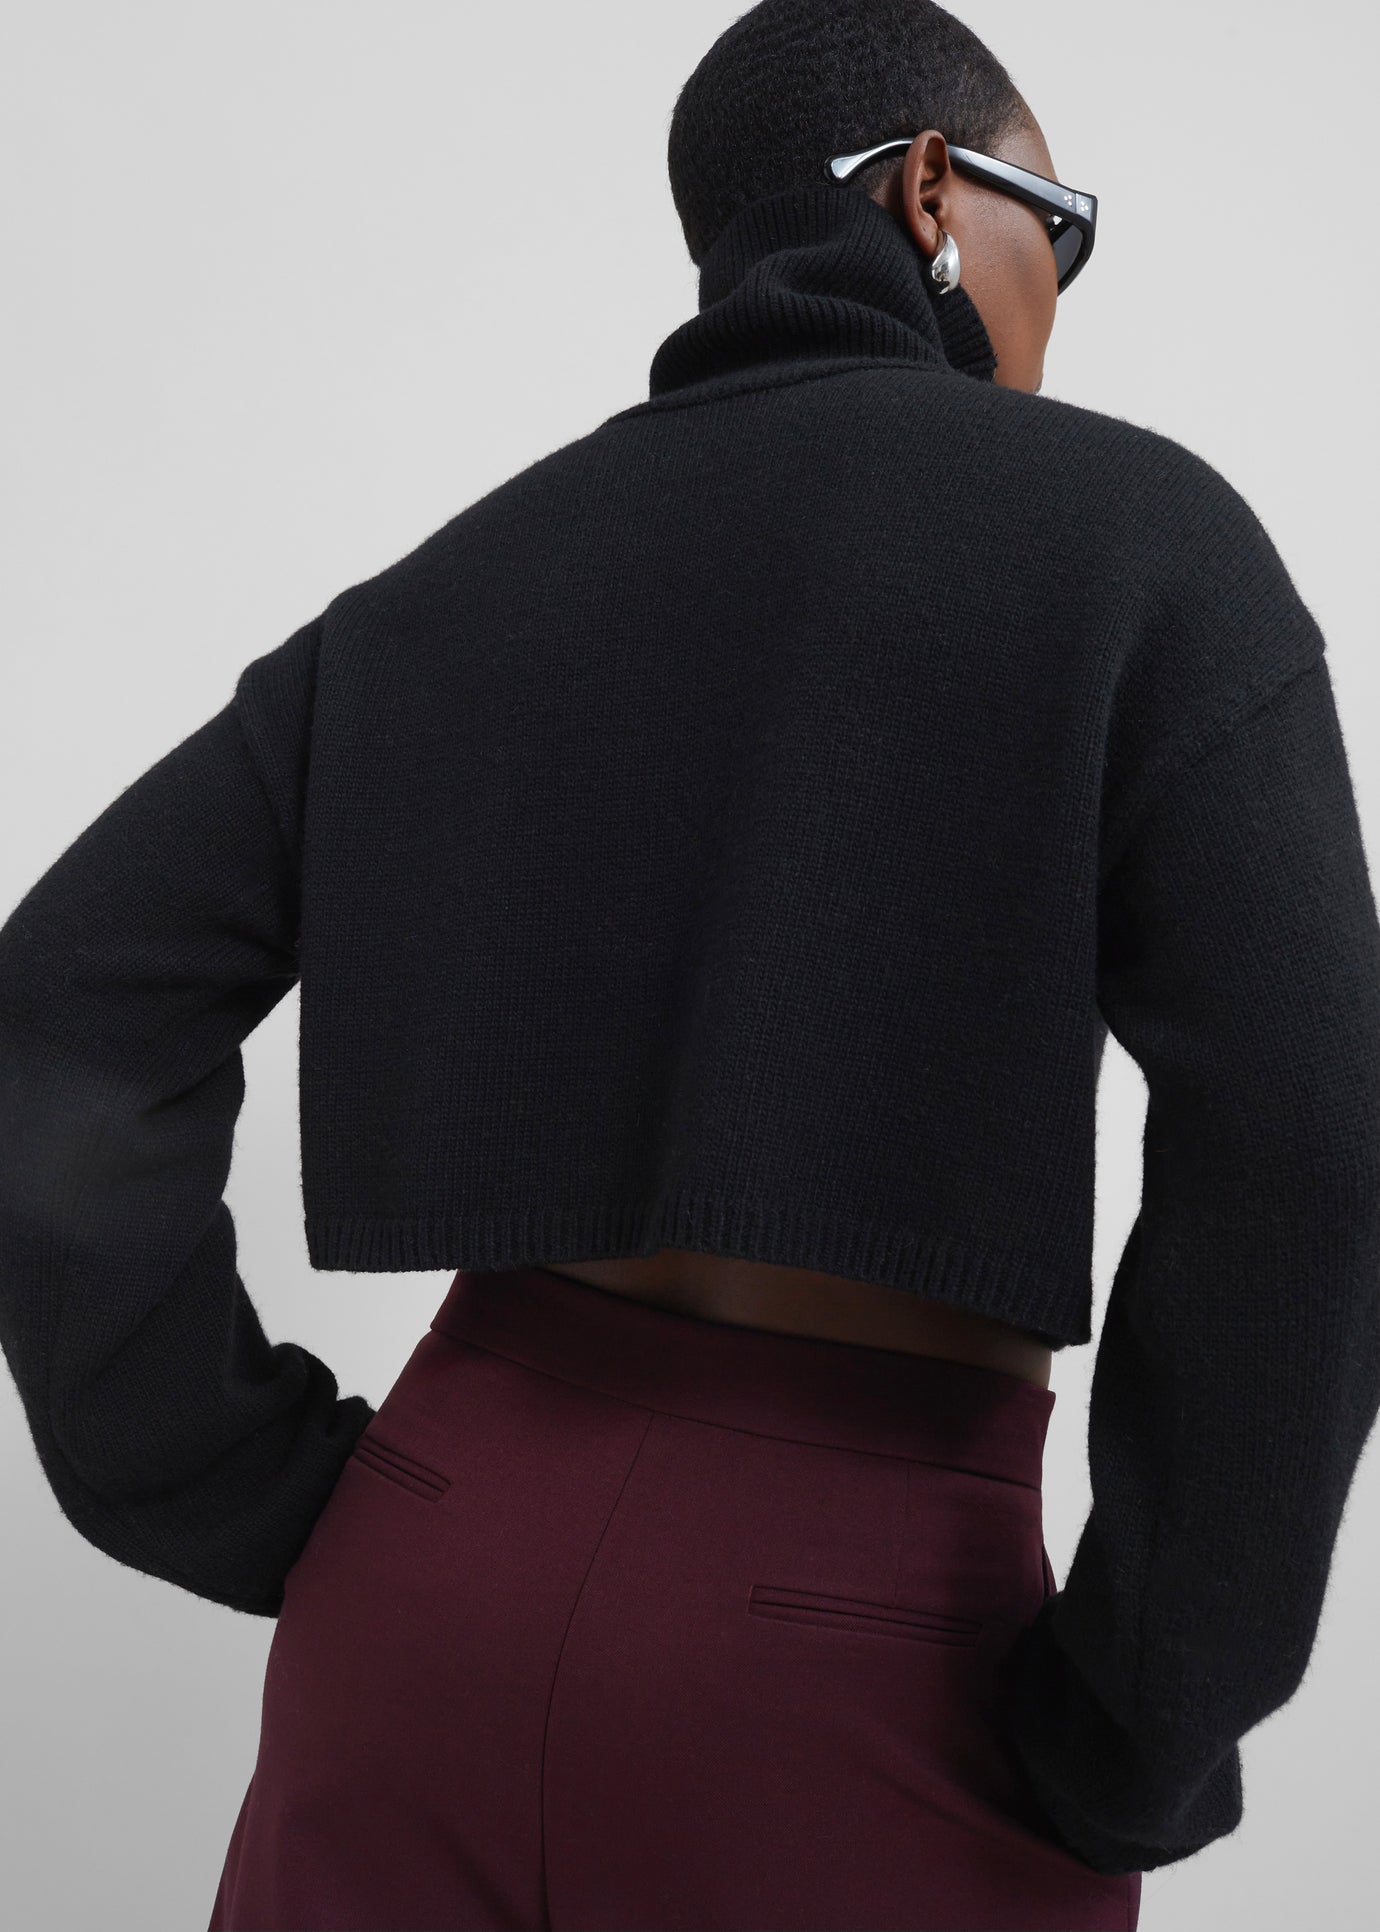 Athina Cropped Turtleneck Sweater - Black - 1